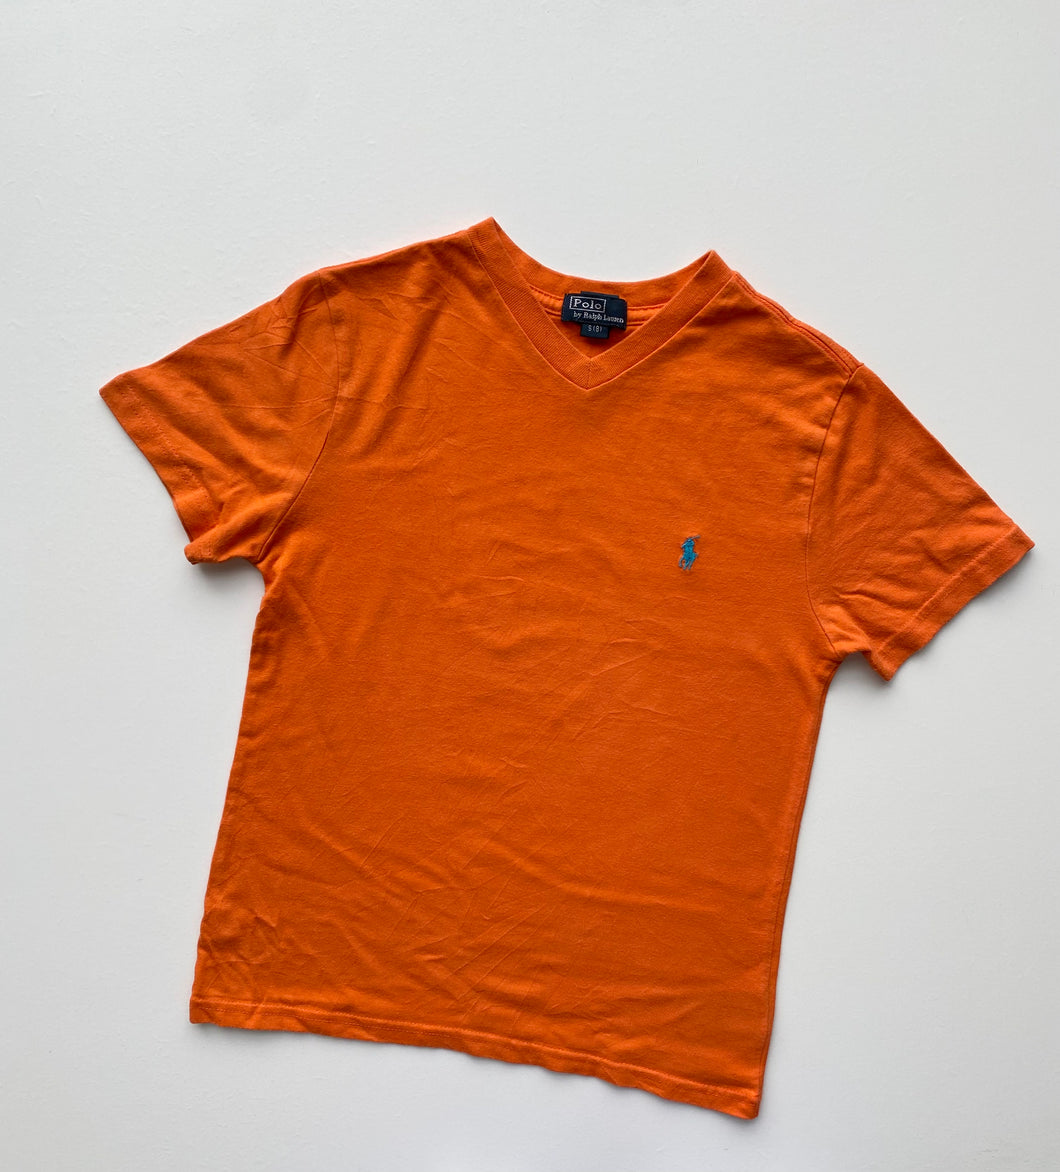 Ralph Lauren t-shirt (Age 8)